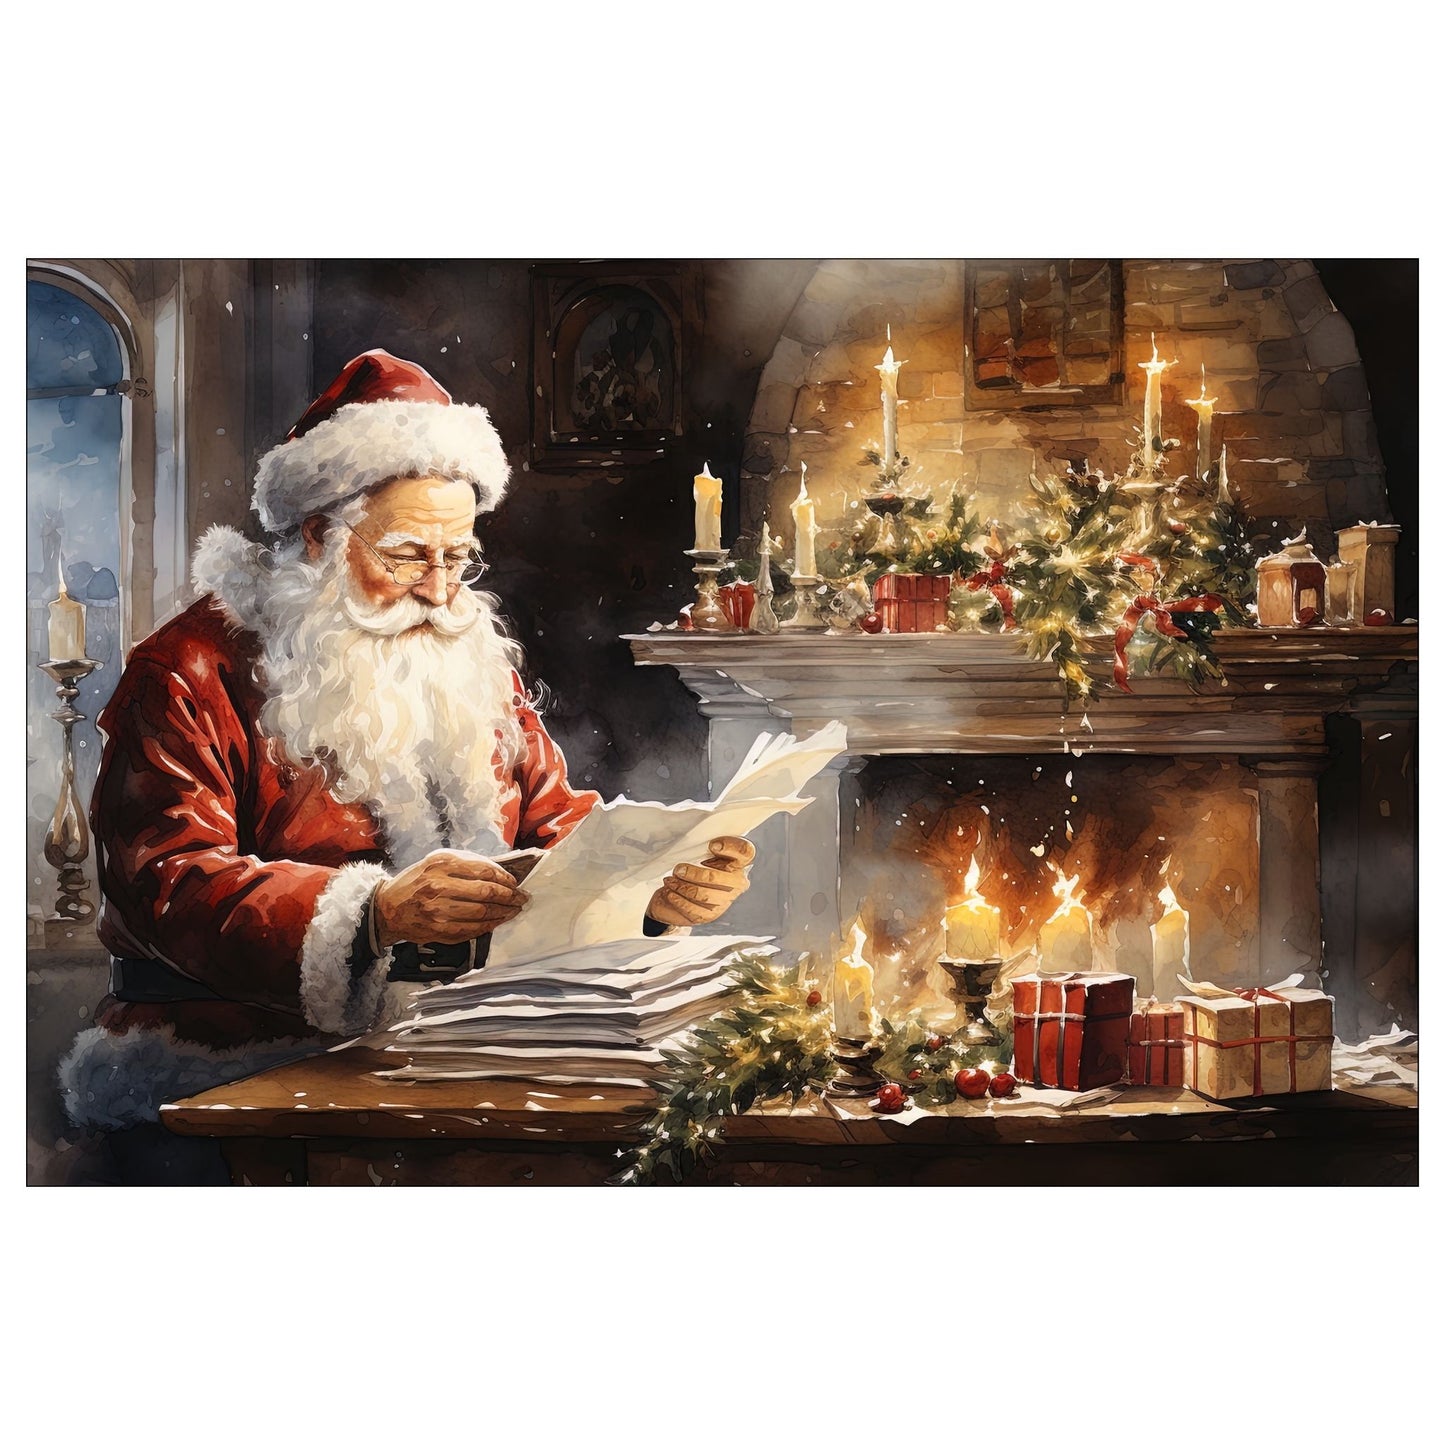 Dekorativt, grafisk julekort av julenisse som sitter og leser ønskelister. Motivet har et nostalgisk preg.